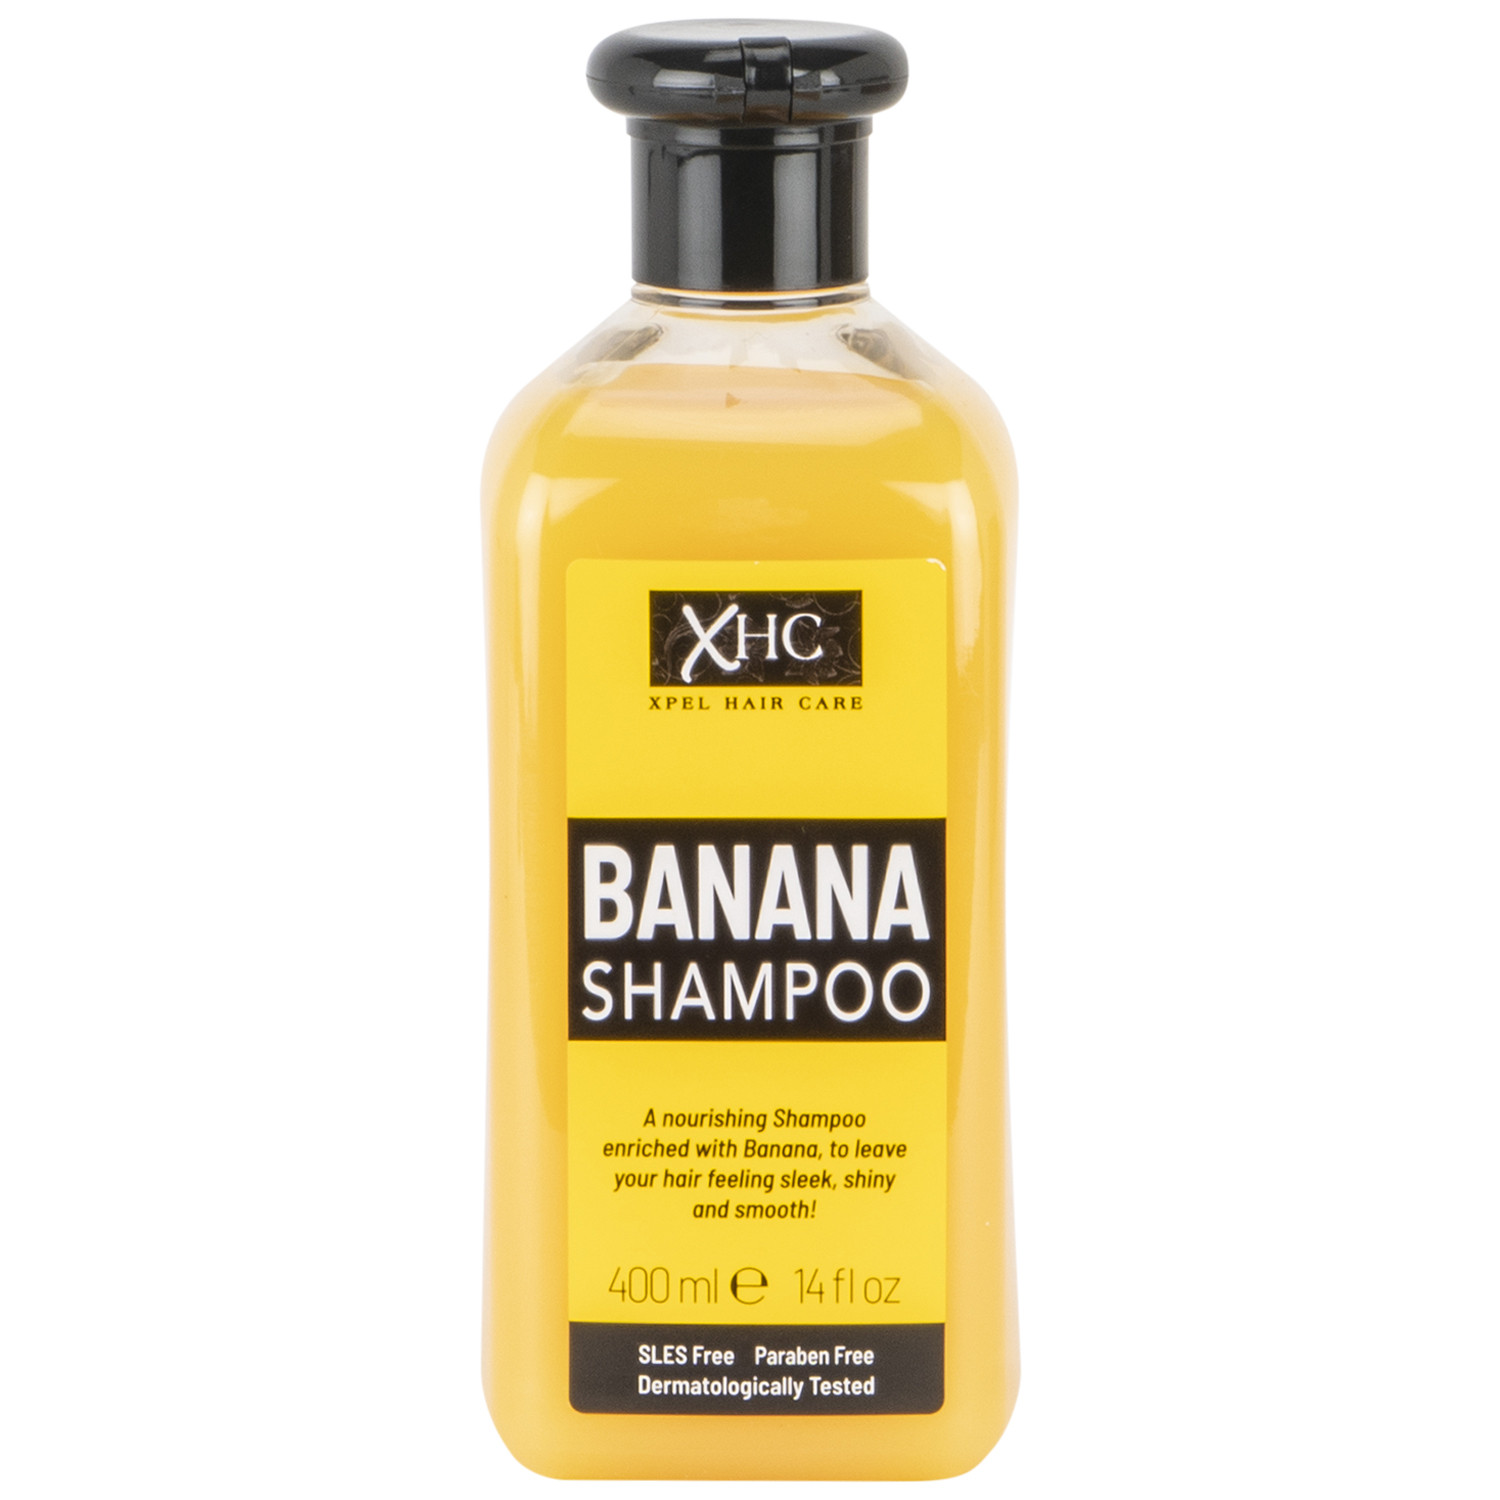 XHC Banana Shampoo Image